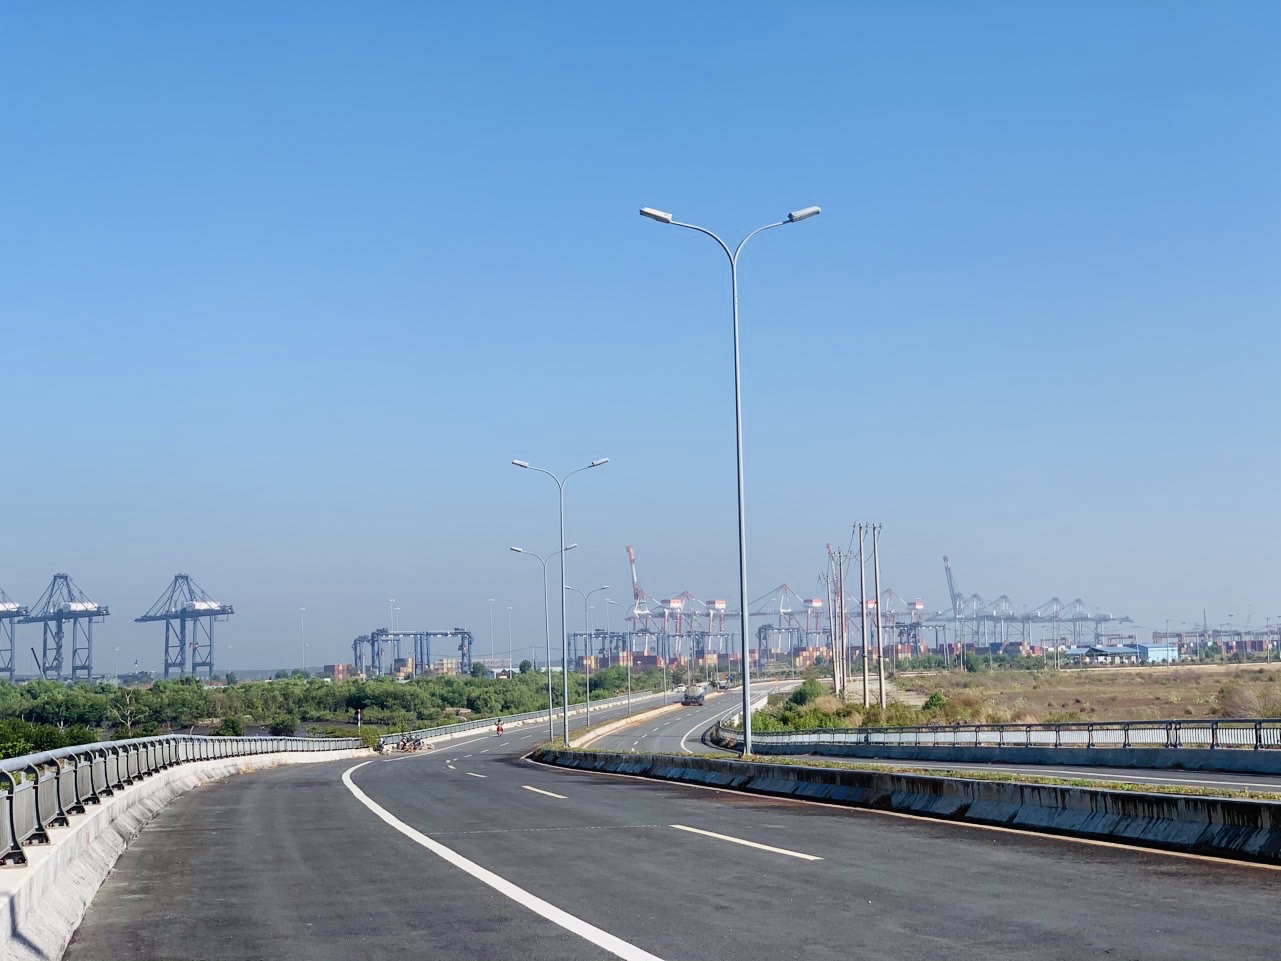 Đường liên cảng Cái Mép - Thị Vải vừa hoàn thành trong năm 2020 góp phần hoàn thiện hạ tầng sau cảng, góp phần phát huy tiềm năng của hệ thống cảng biển Bà Rịa- Vũng Tàu, phục vụ cho vùng kinh tế trọng điểm phía Nam.